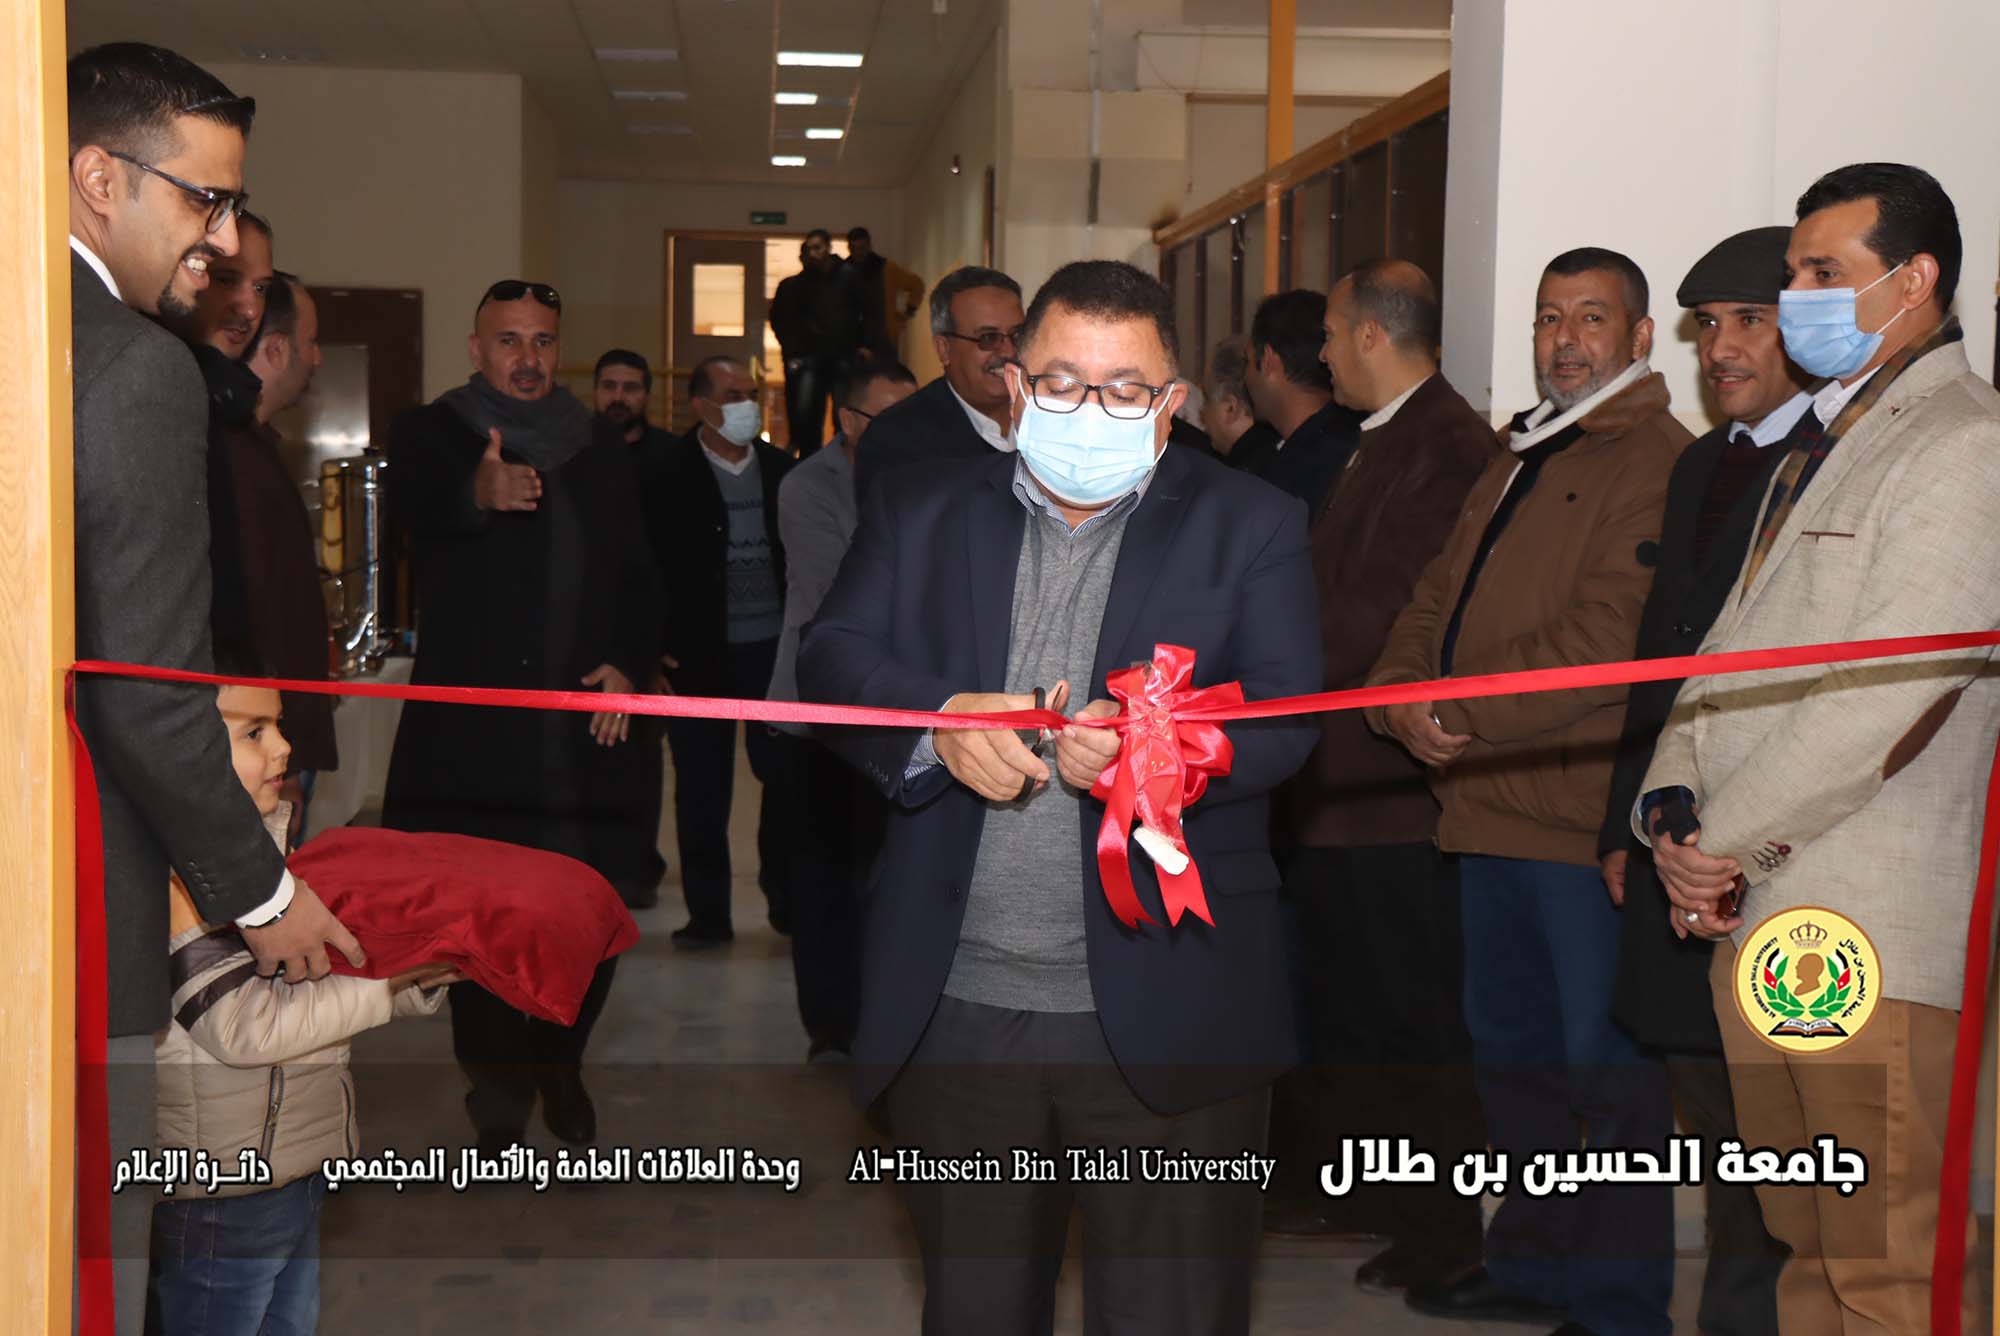  إفتتاح مختبر إنترنت الأشياء في جامعة الحسين بن طلال